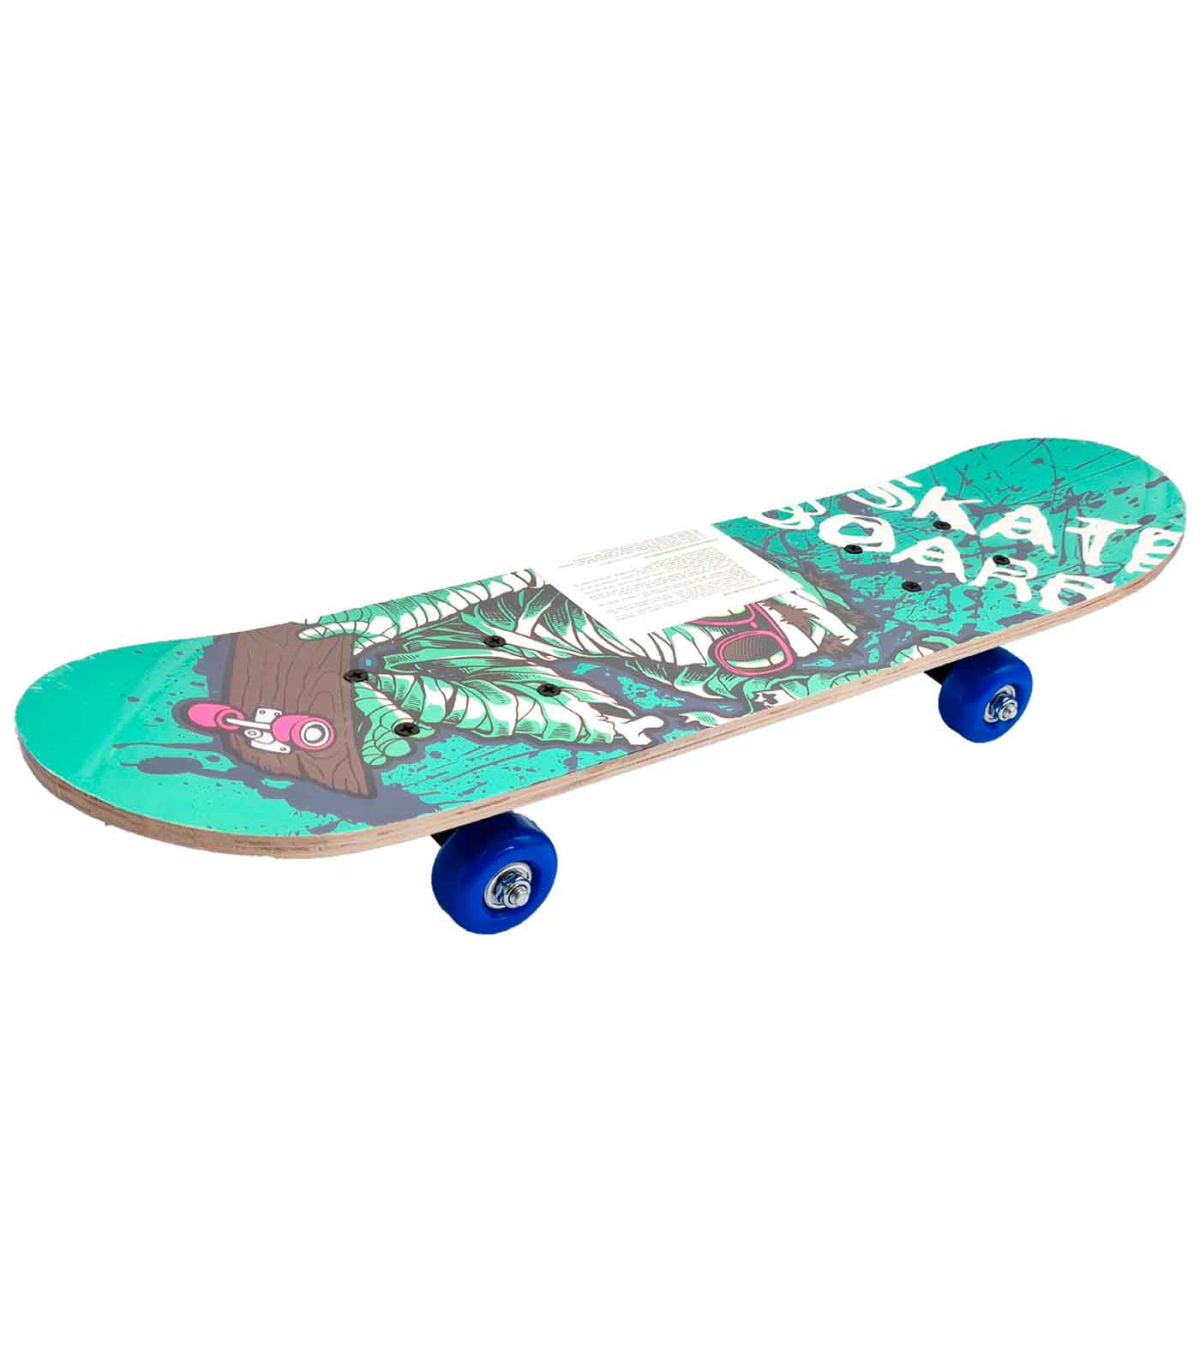 Tradineur - Skateboard para niños y jóvenes - Fabricado en madera -  Compacto y resistente, divertido de conducir - 14,5 x 58,2 c